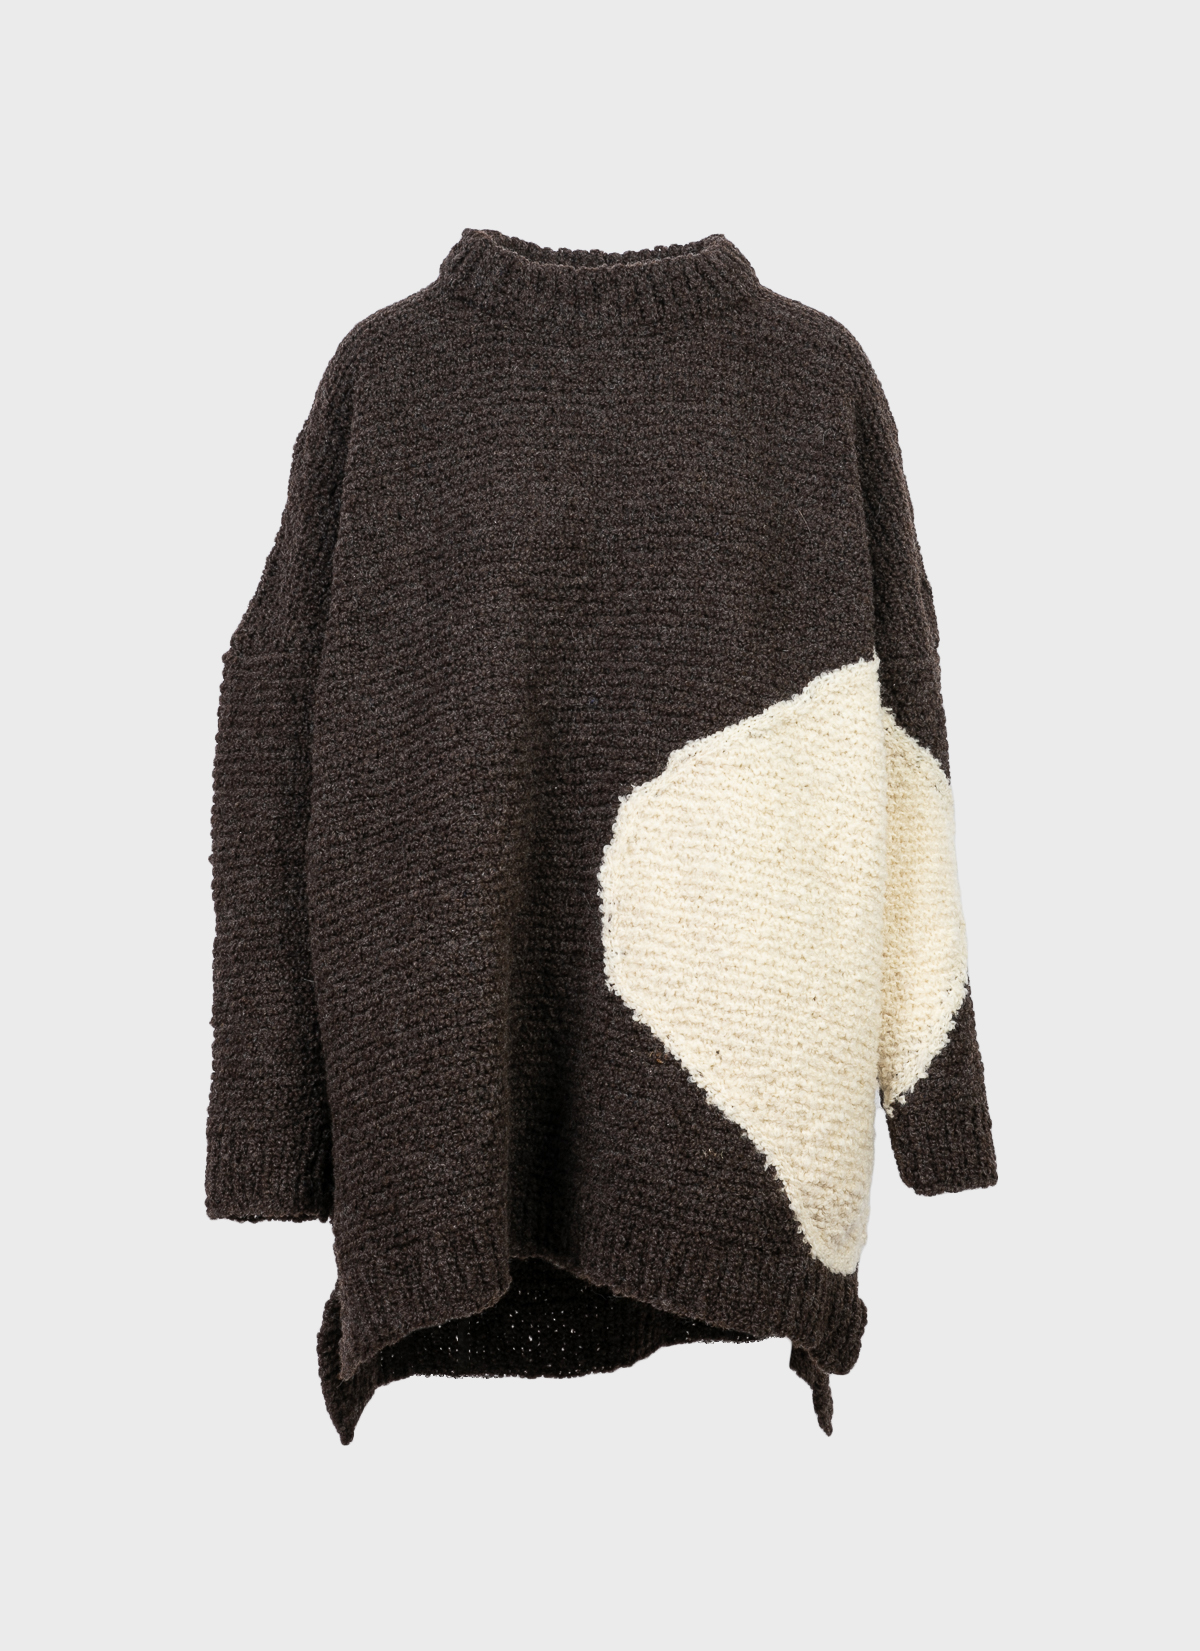 Carbone Condor Sweater